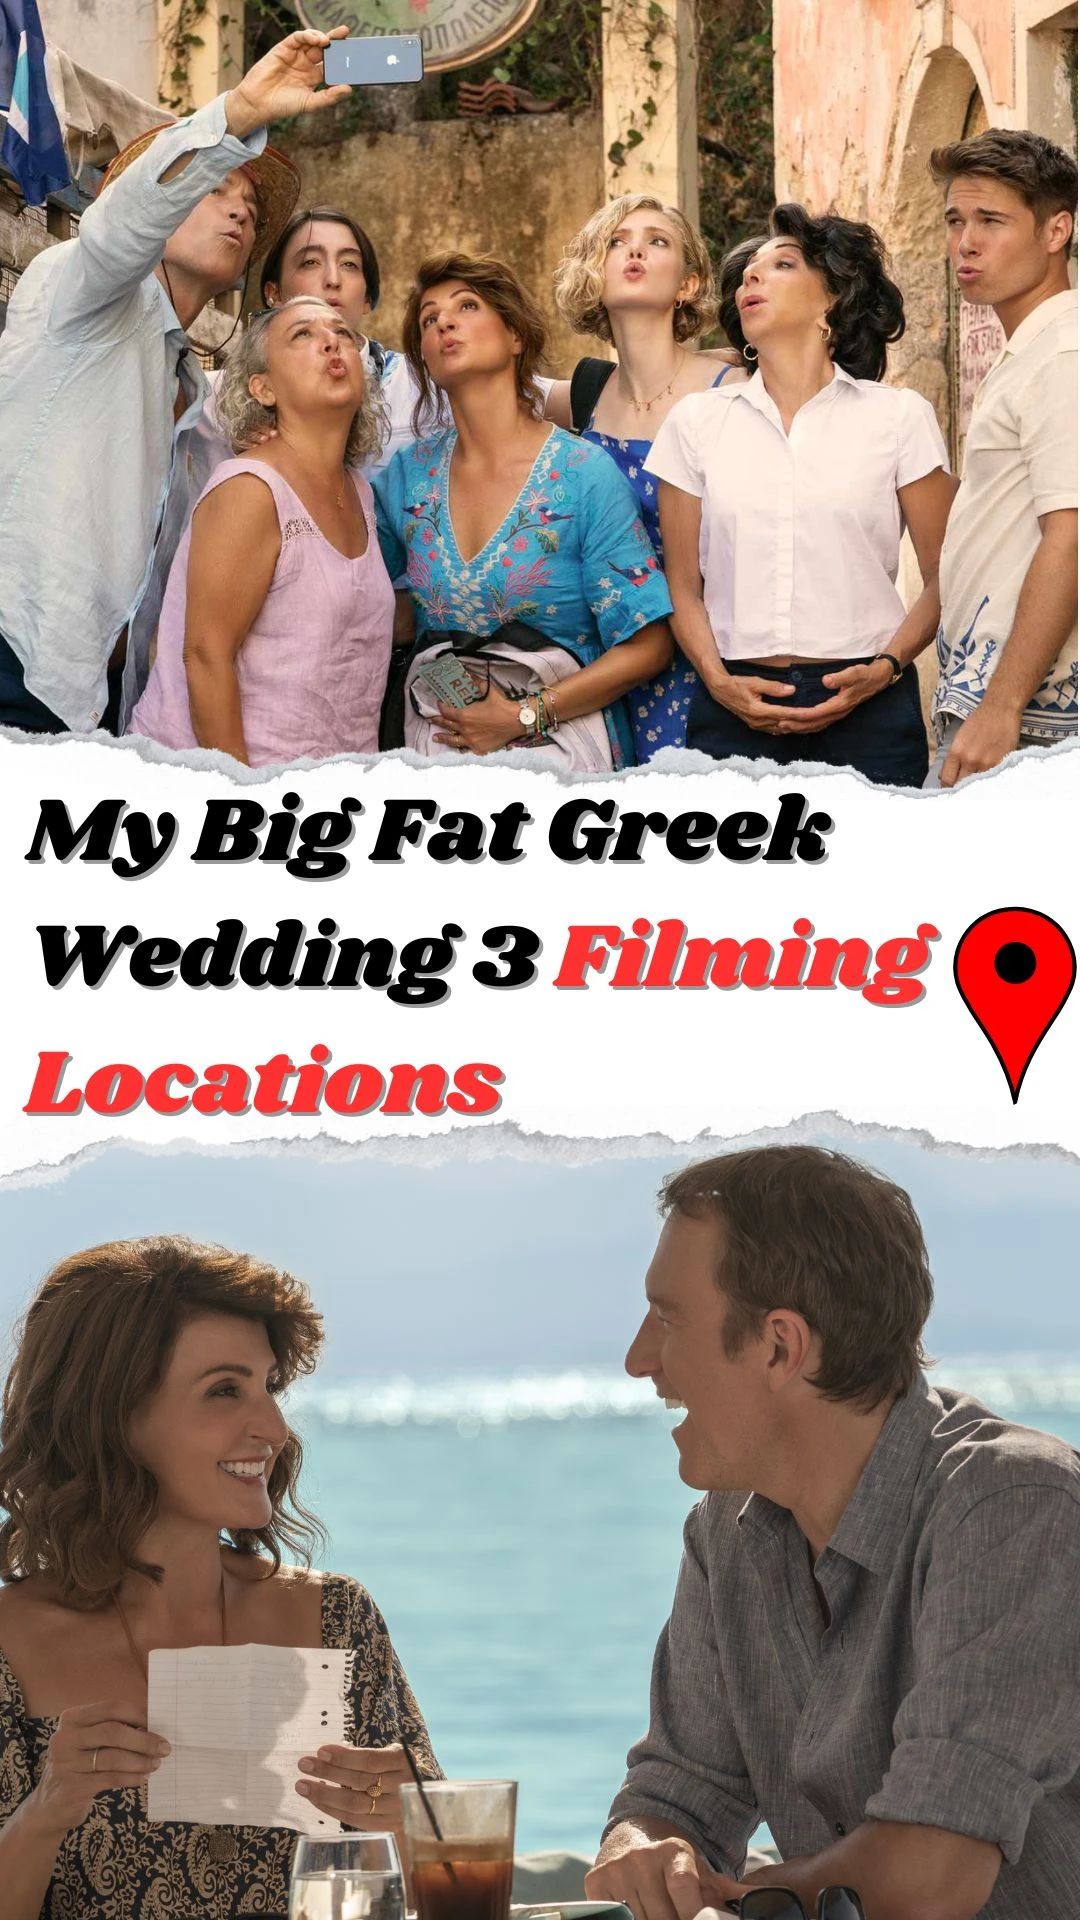 My Big Fat Greek Wedding 3 Filming Locations